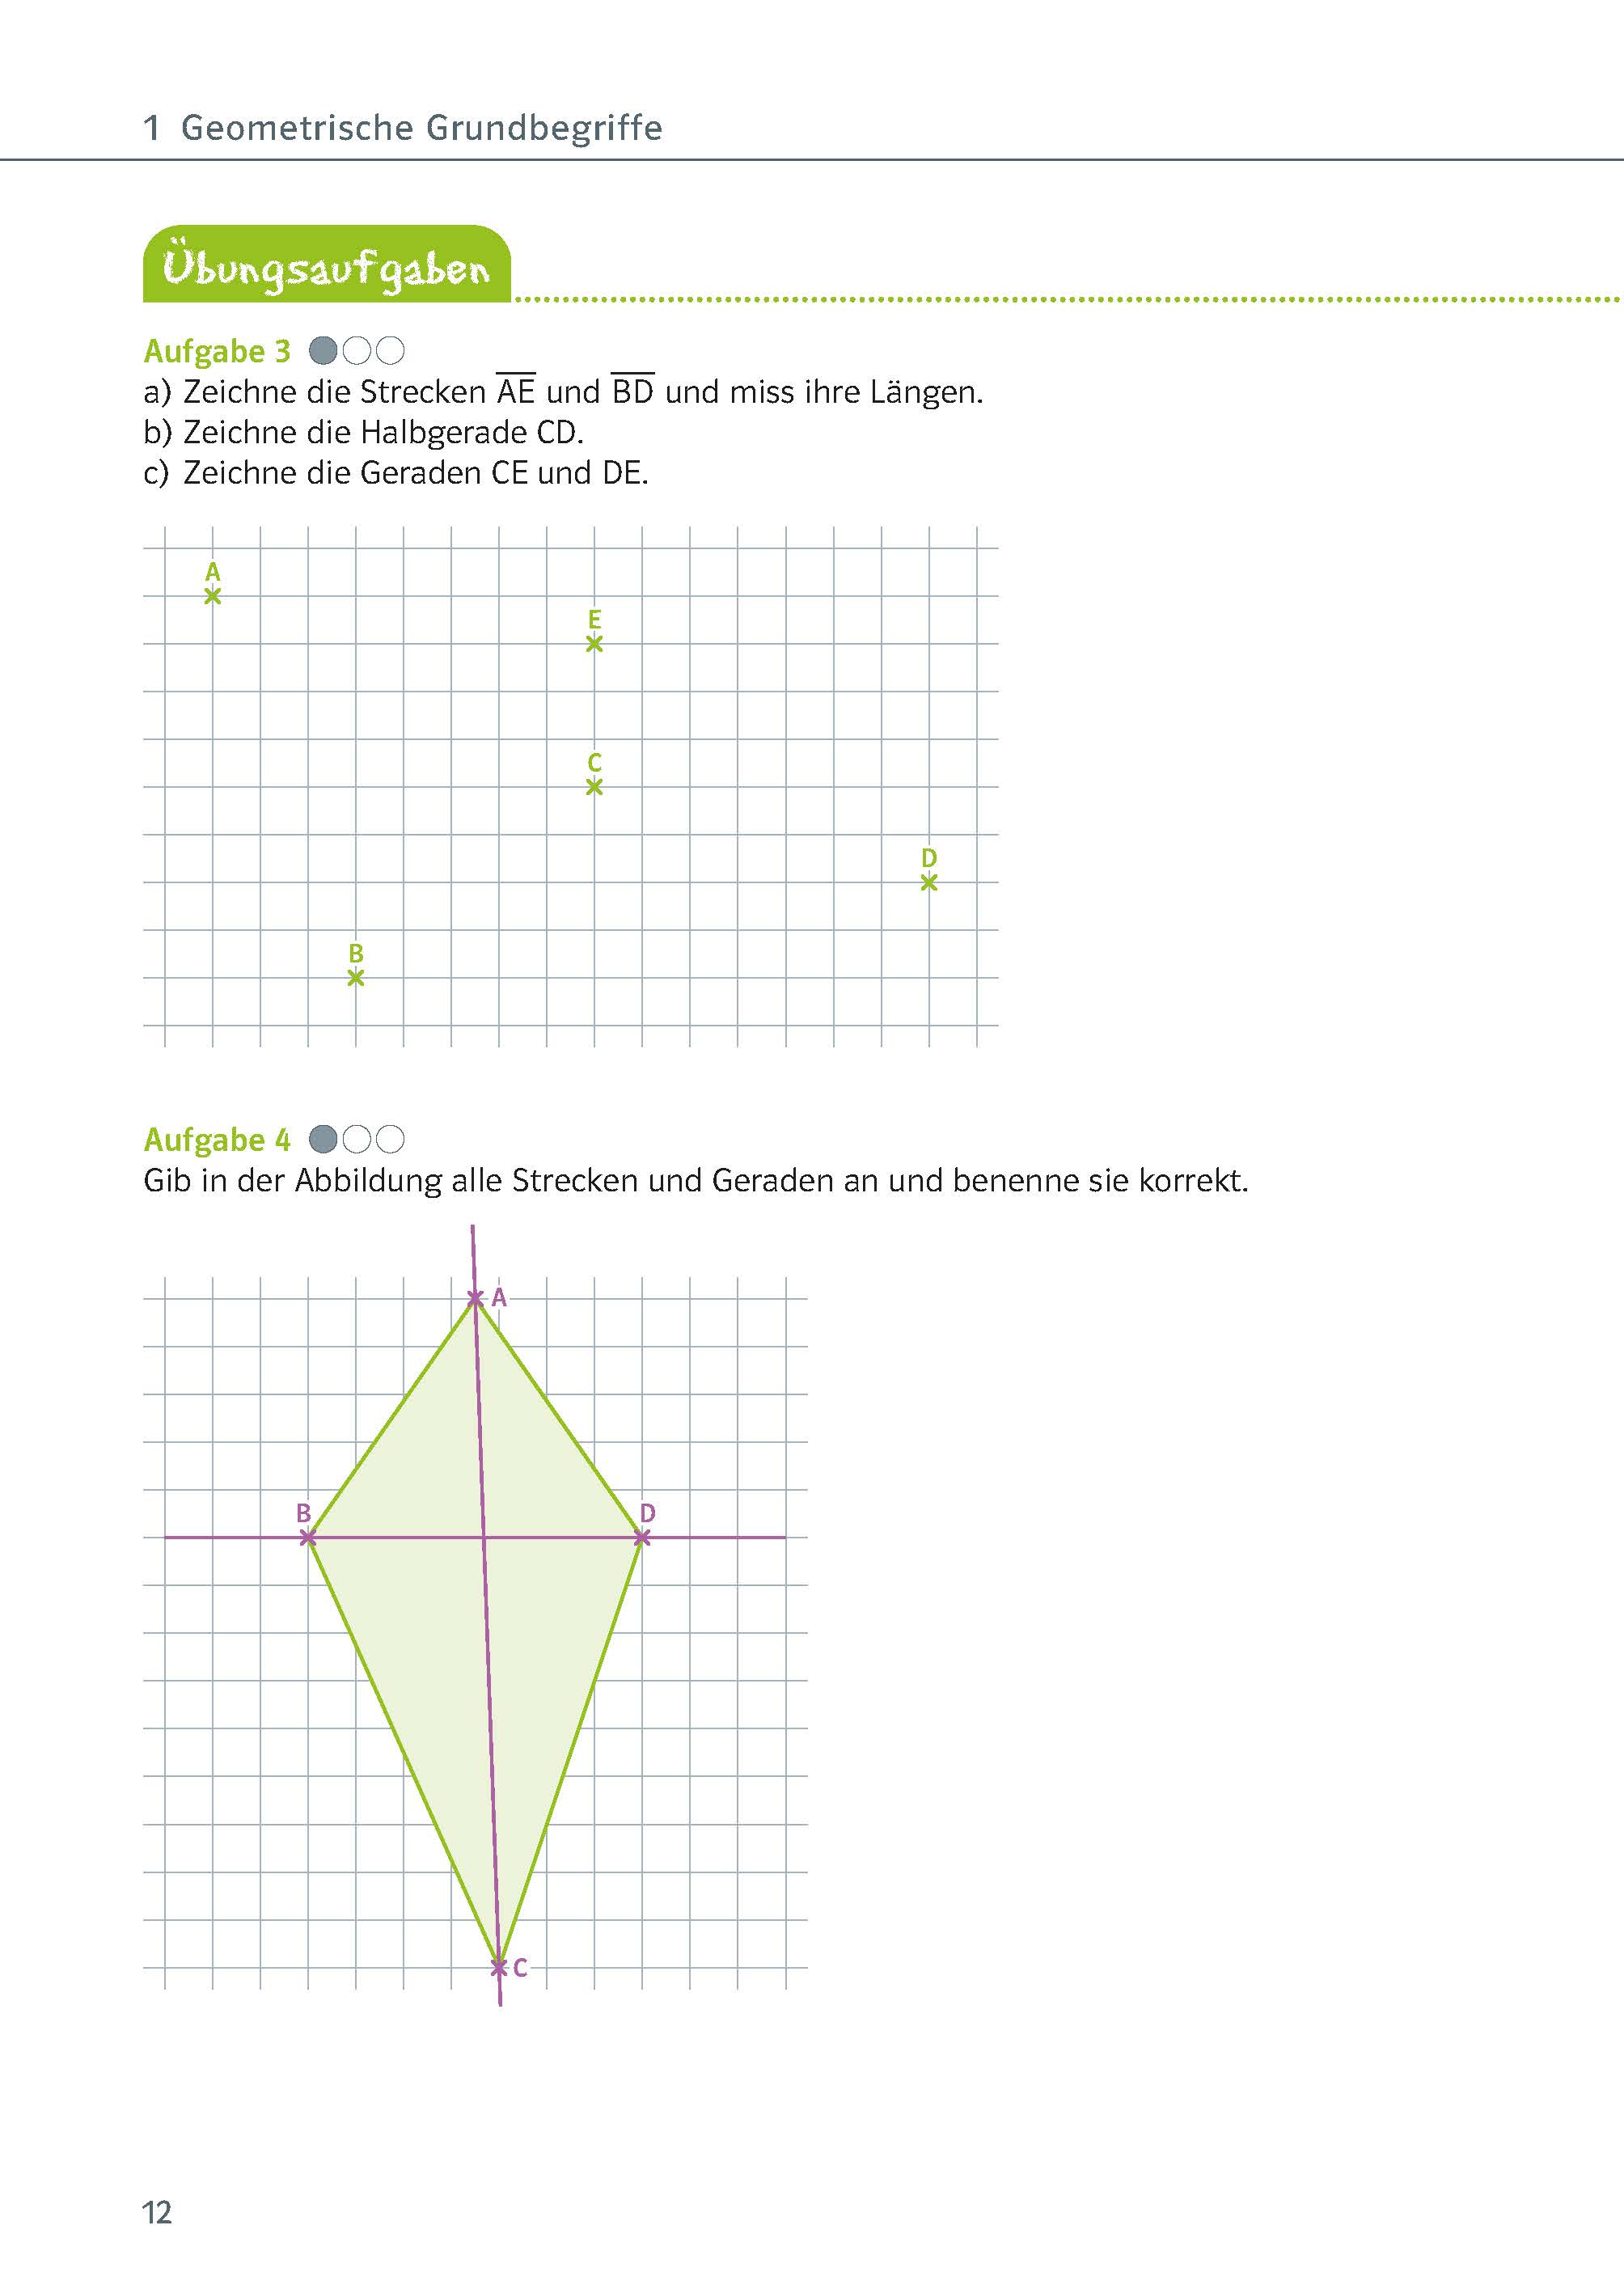 Klett Ich kann Mathe - Geometrie 5./6. Klasse